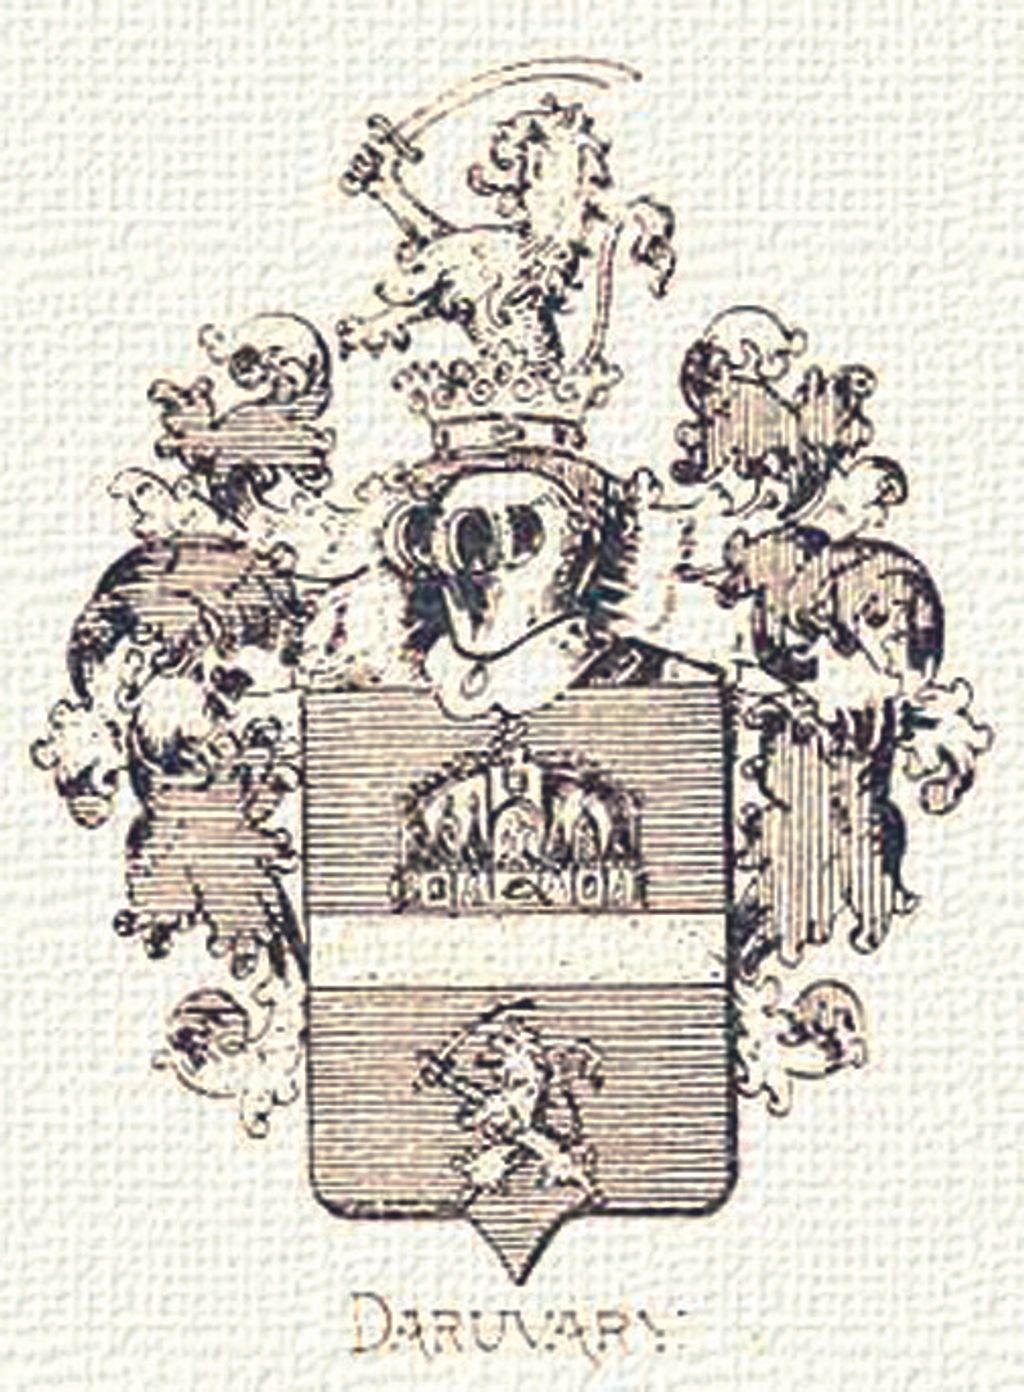 41 - SZENTKORONA - Daruváry(daruvári) címer